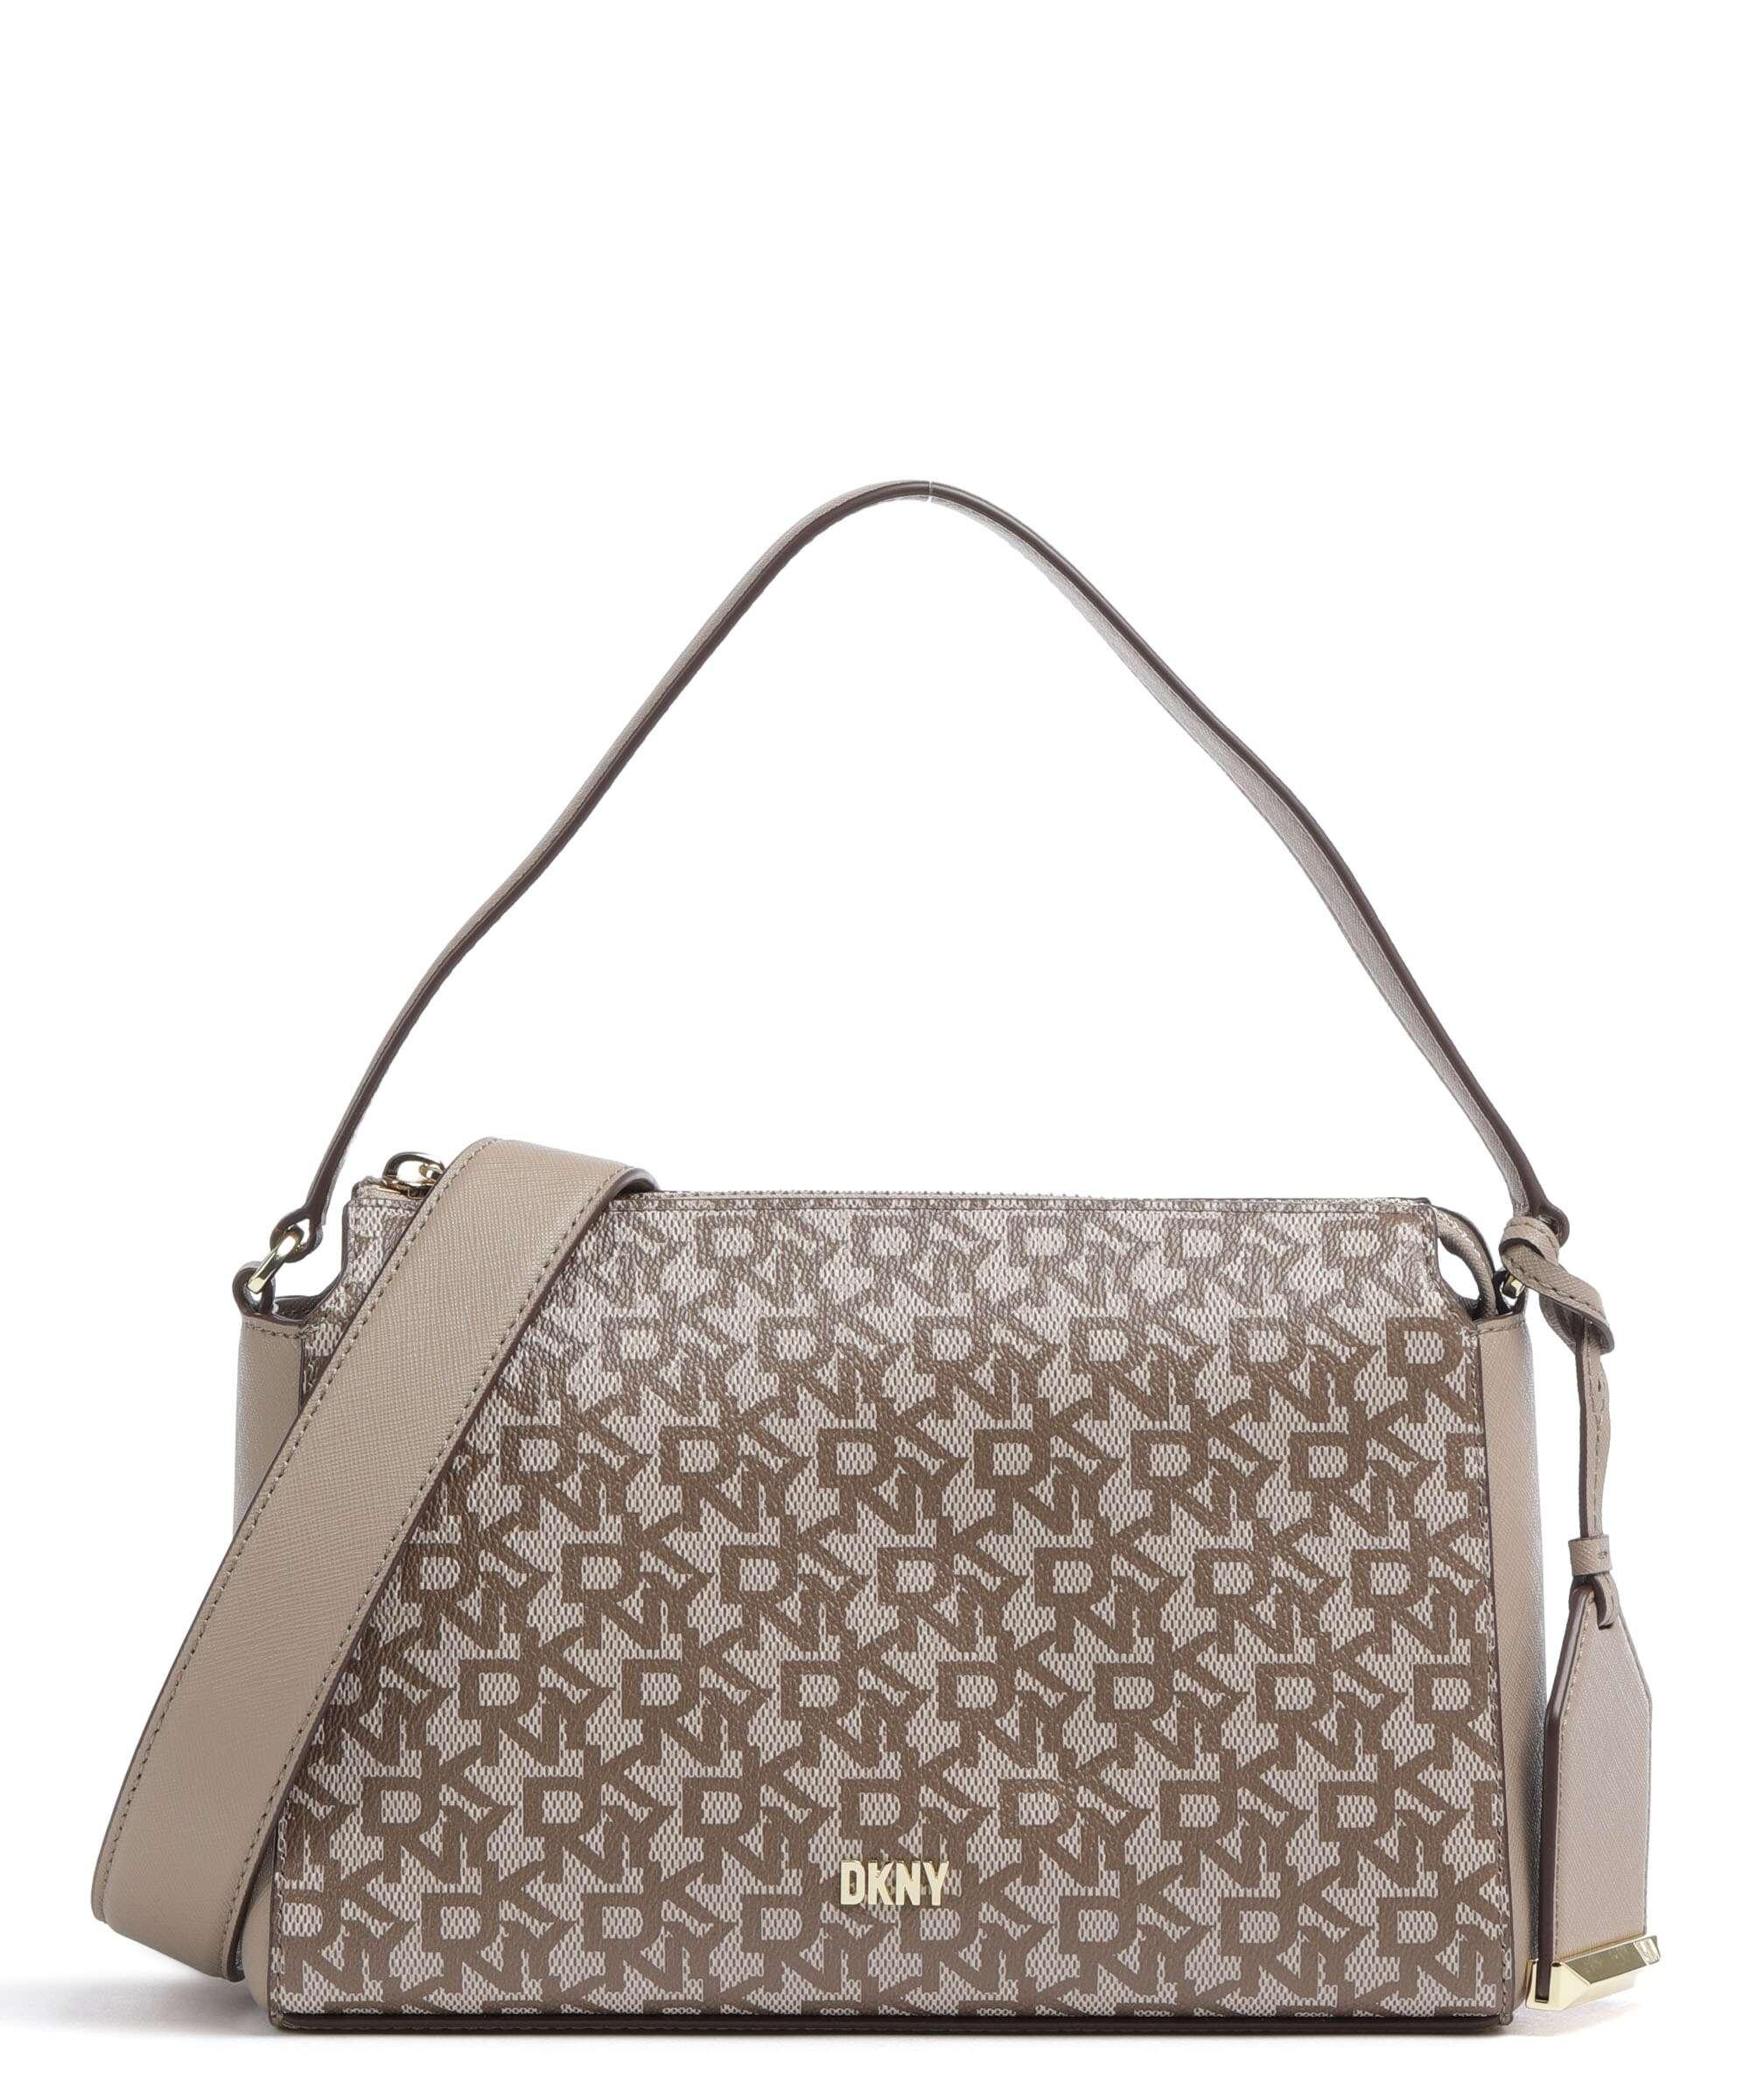 DKNY Bags & Handbags | DKNY Purses | Very.co.uk